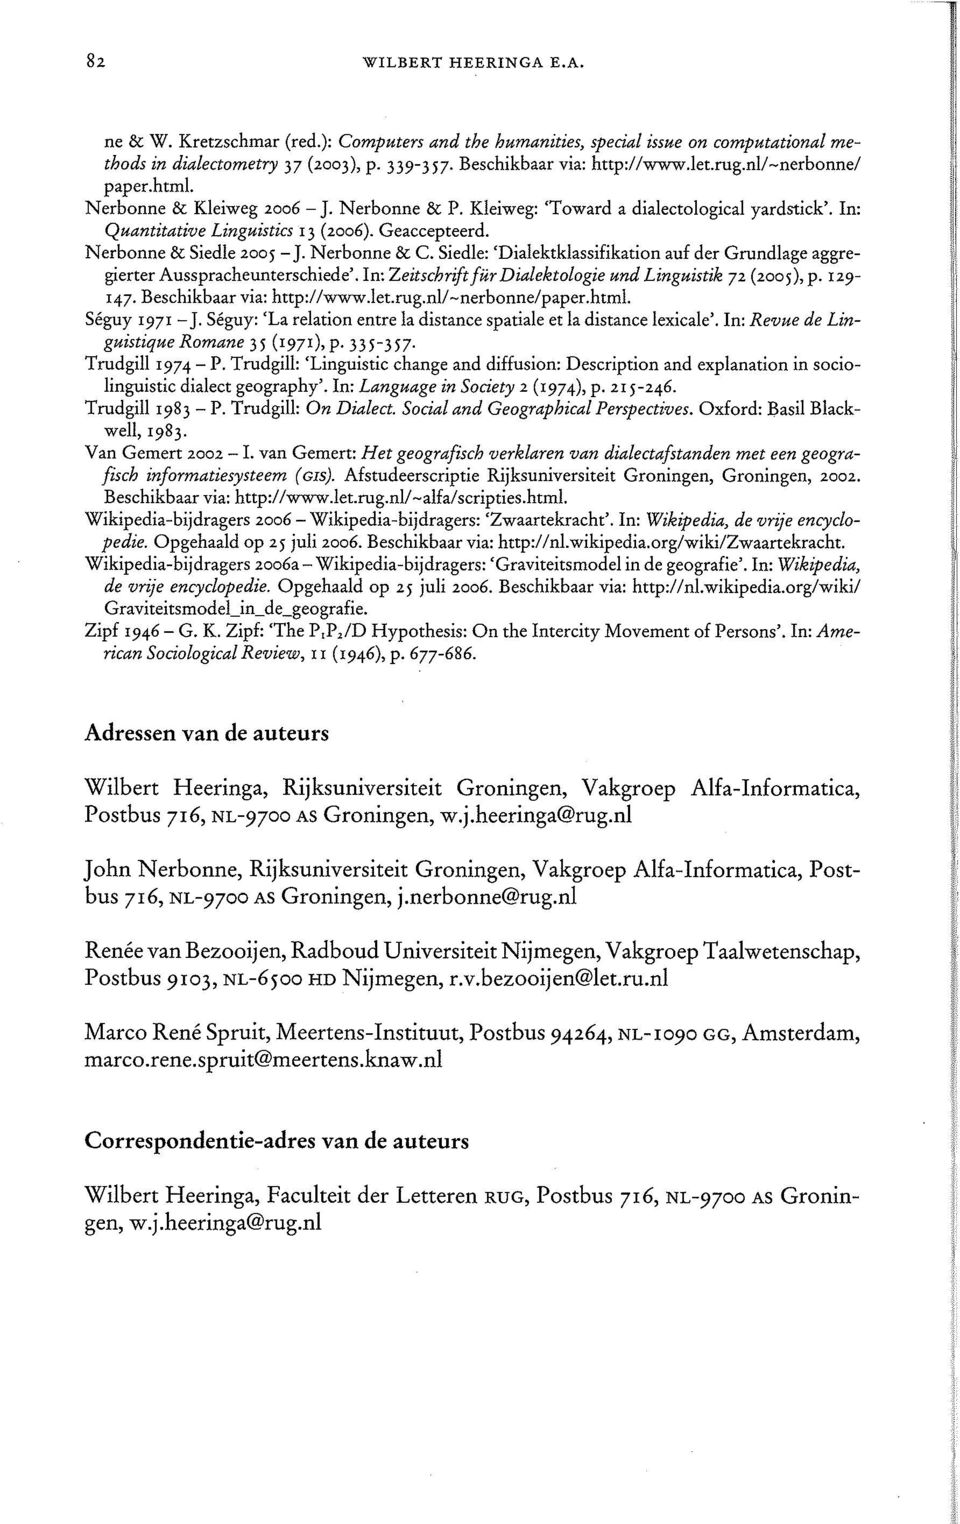 Nerbonne & C. Siedle: 'Dialektklassifikation auf der Grundlage aggregierter Ausspracheunterschiede'. In: Zeitschrift fur Dialektologie und Linguistik 72 (2005), p. 129-147.